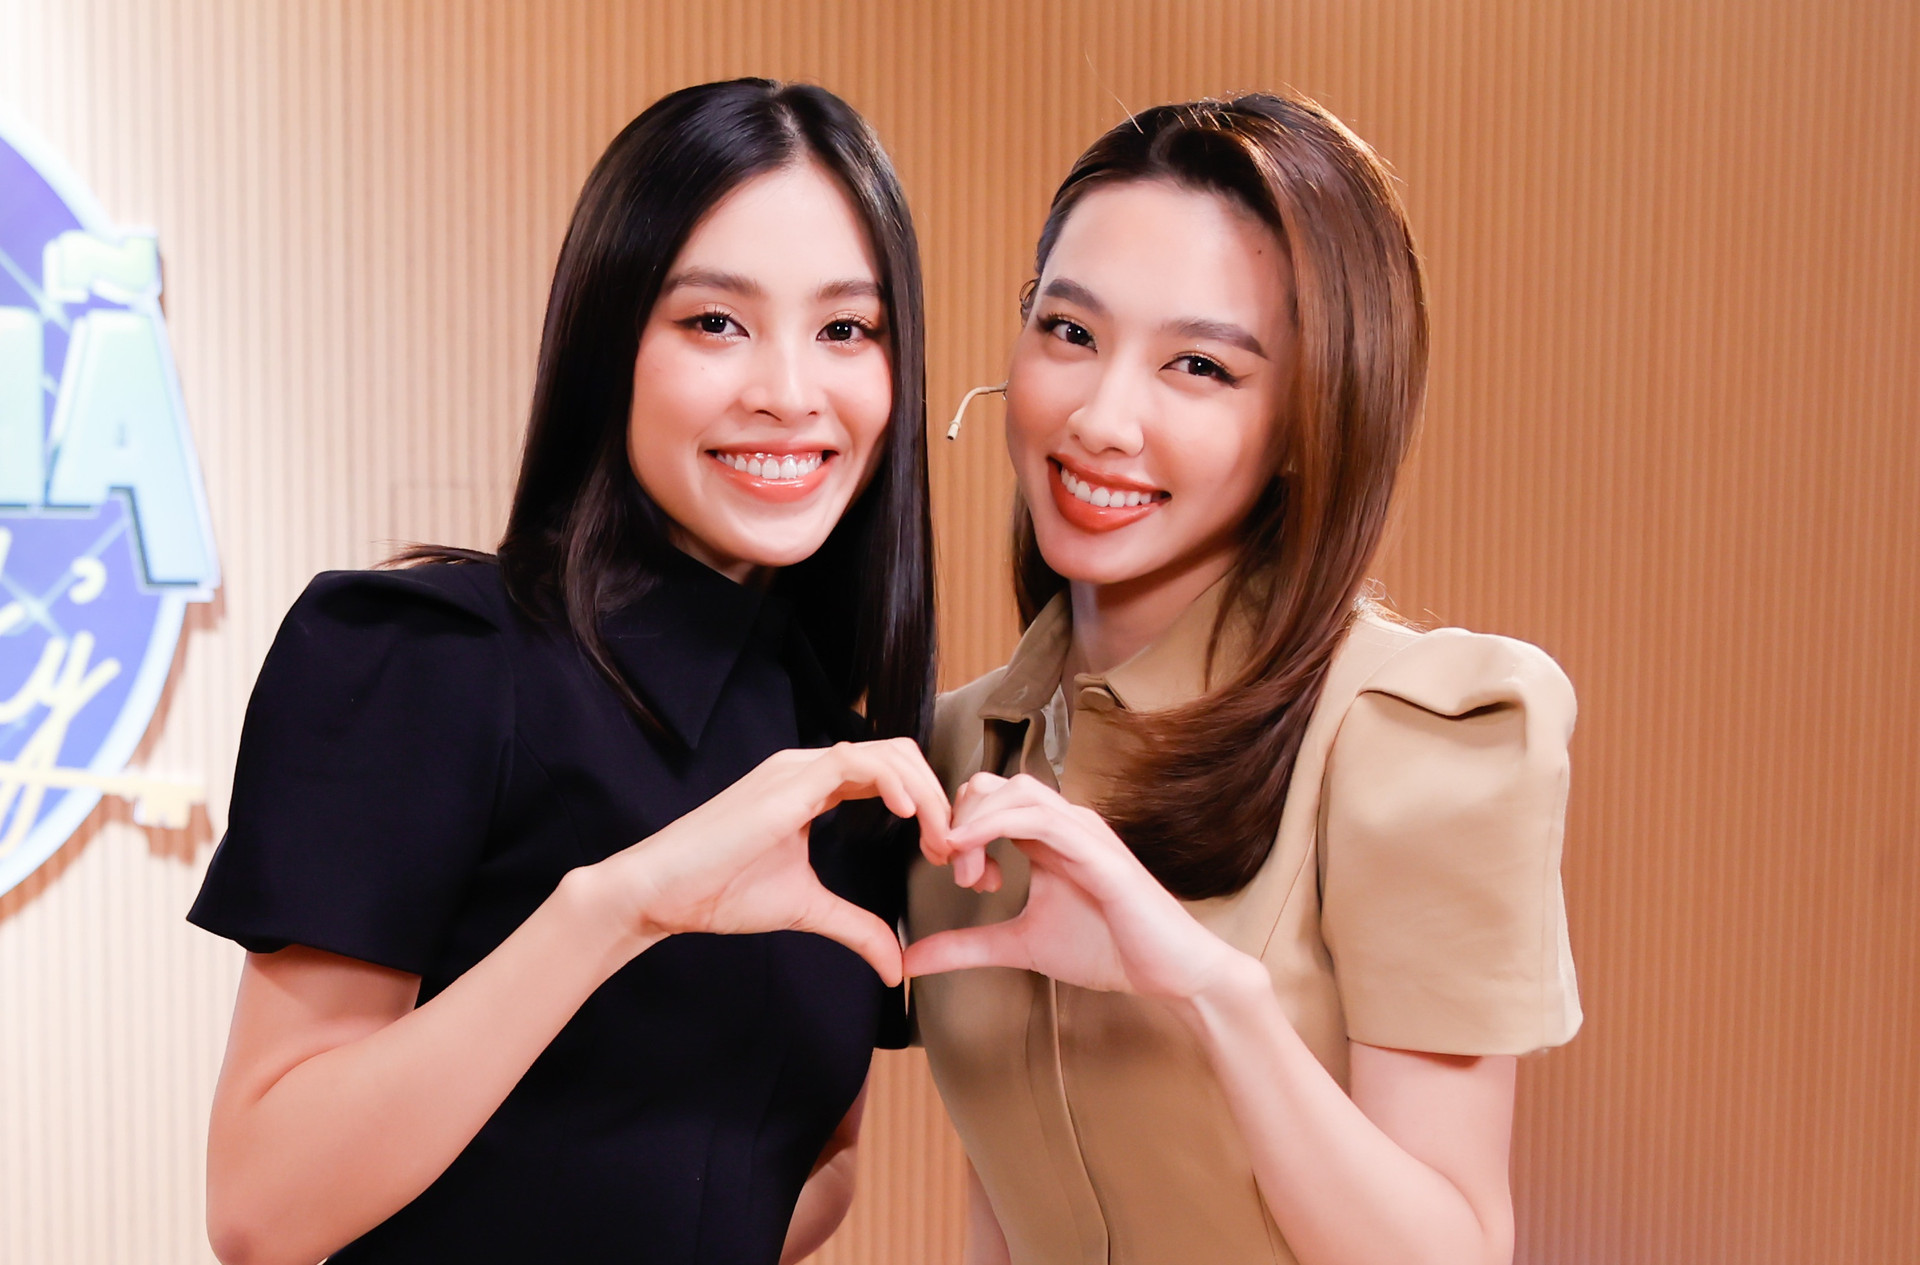 Hoa hậu Tiểu Vy bật khóc, xin lỗi người đẹp Thùy Tiên trên sóng truyền hình - 2